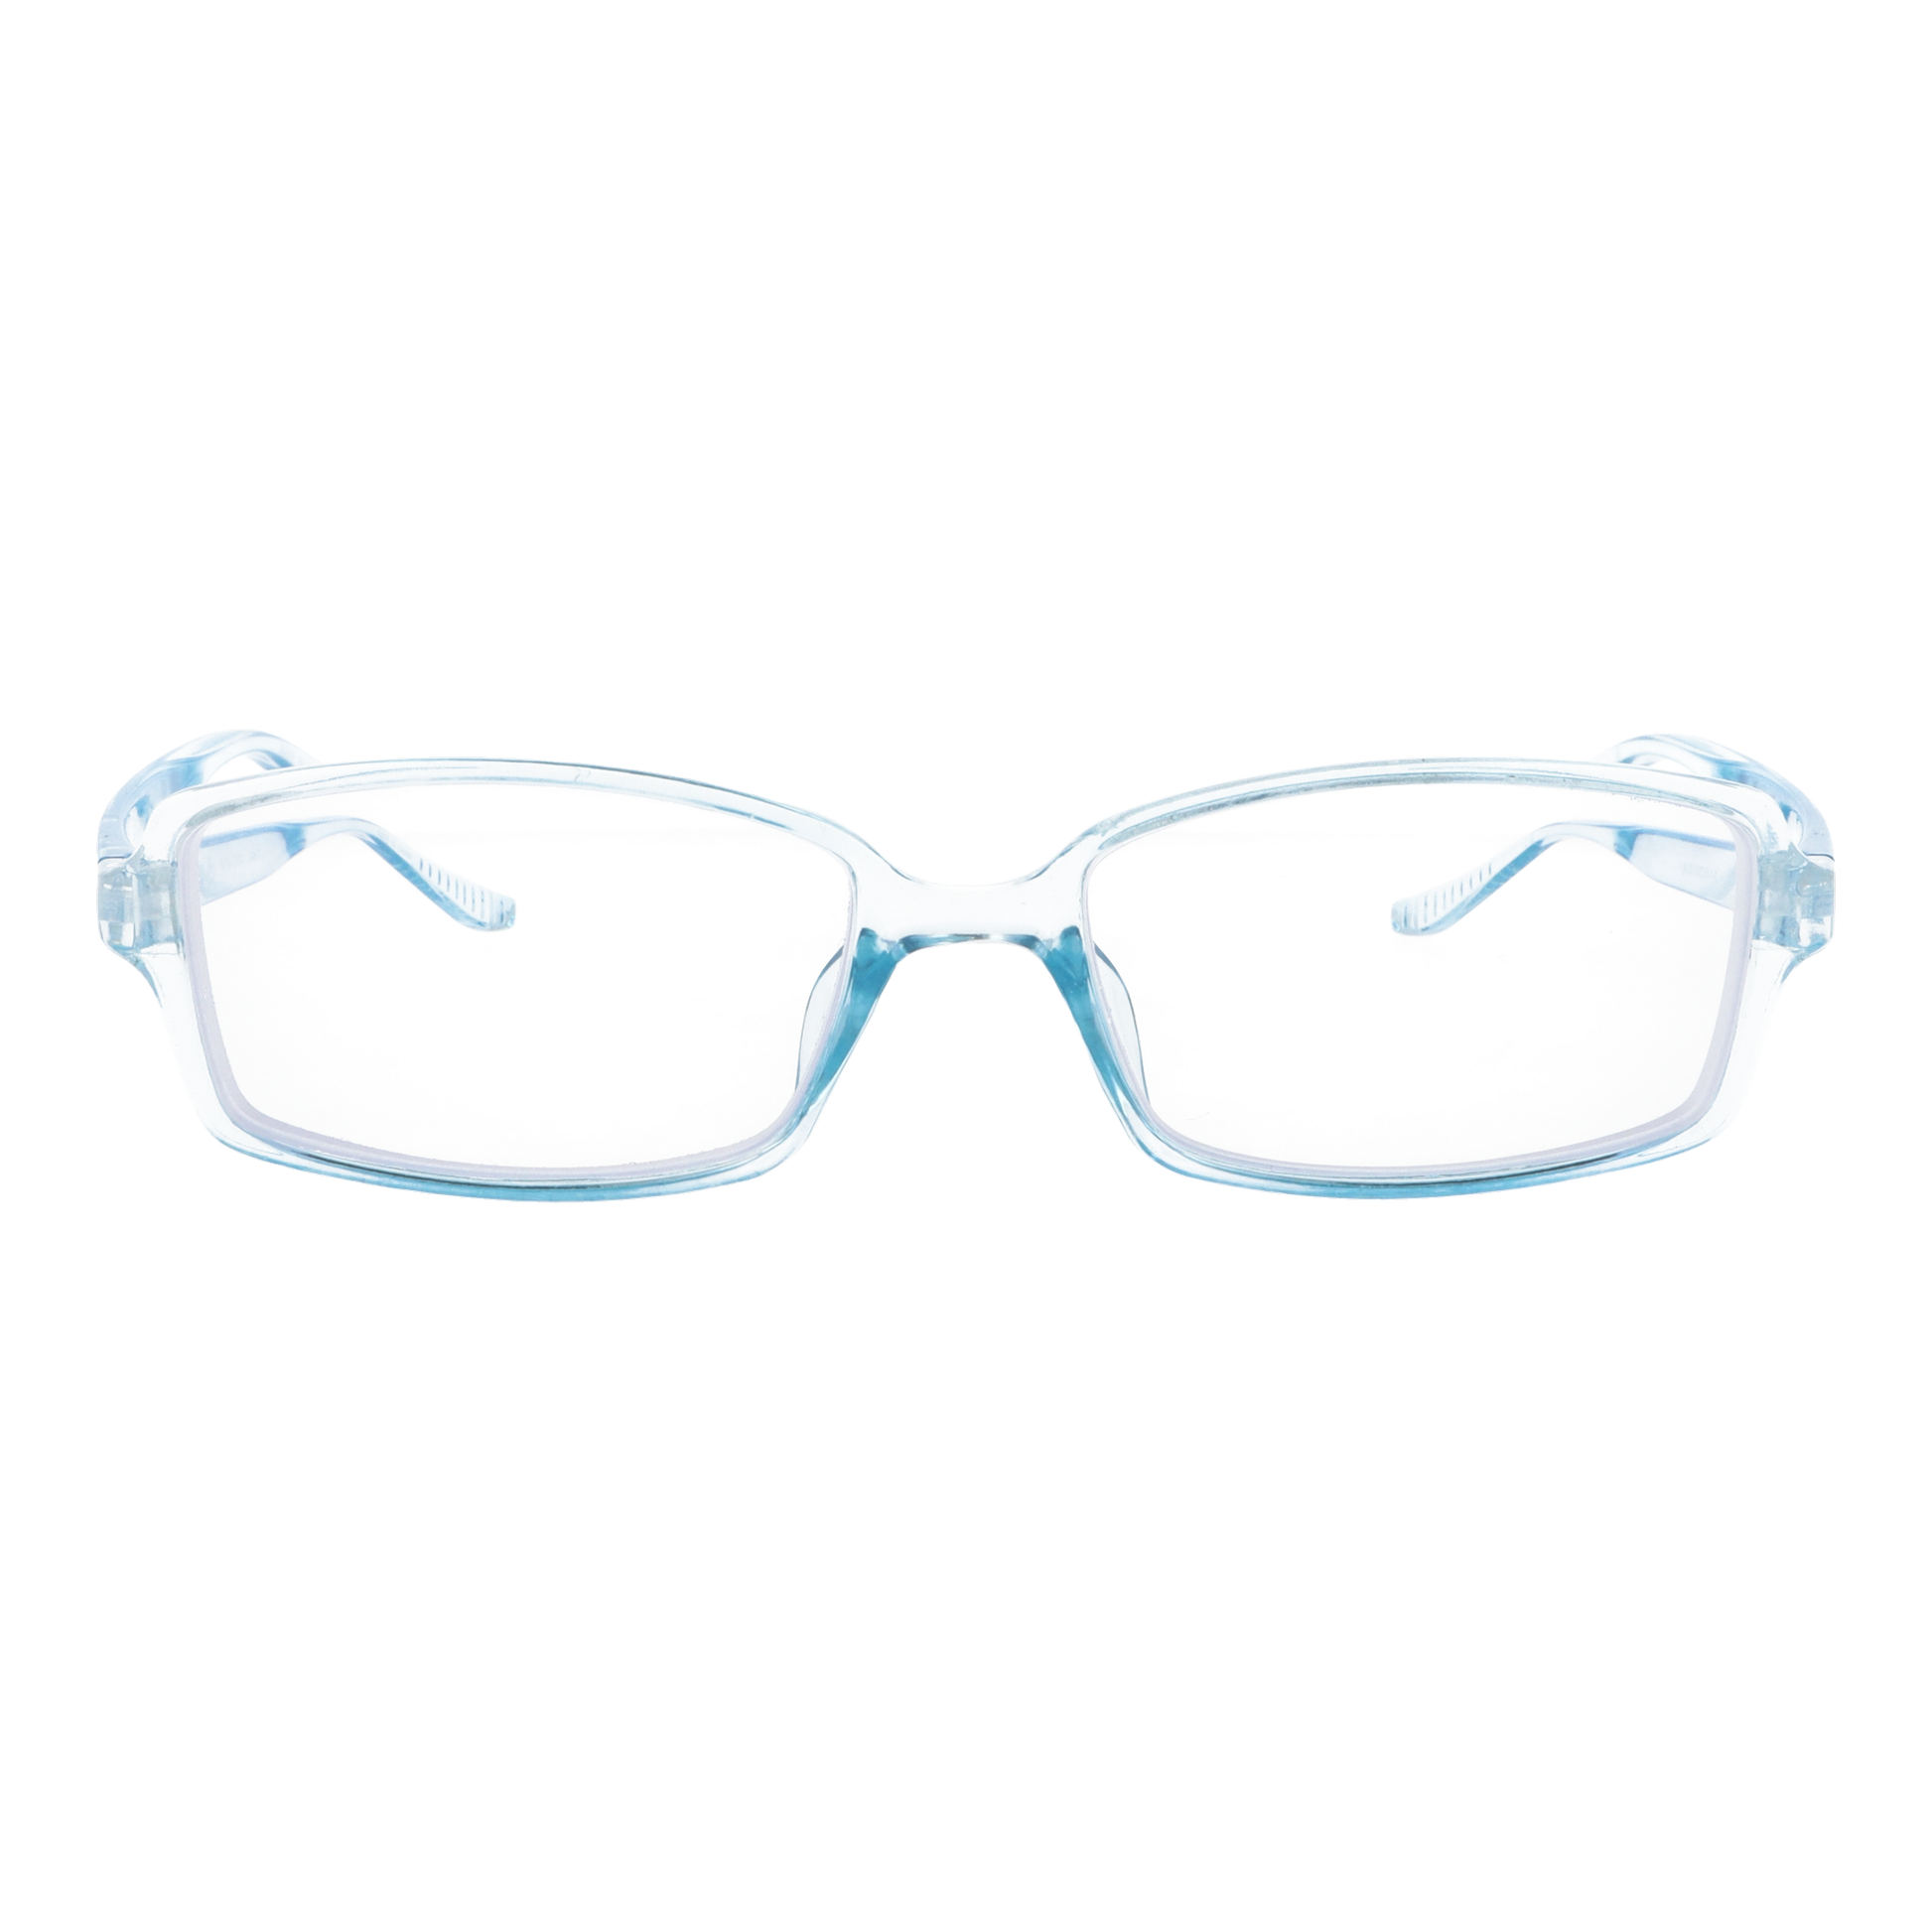 正面から見たアイウェア【お風呂メガネ】近視用のカラーアクアブルー